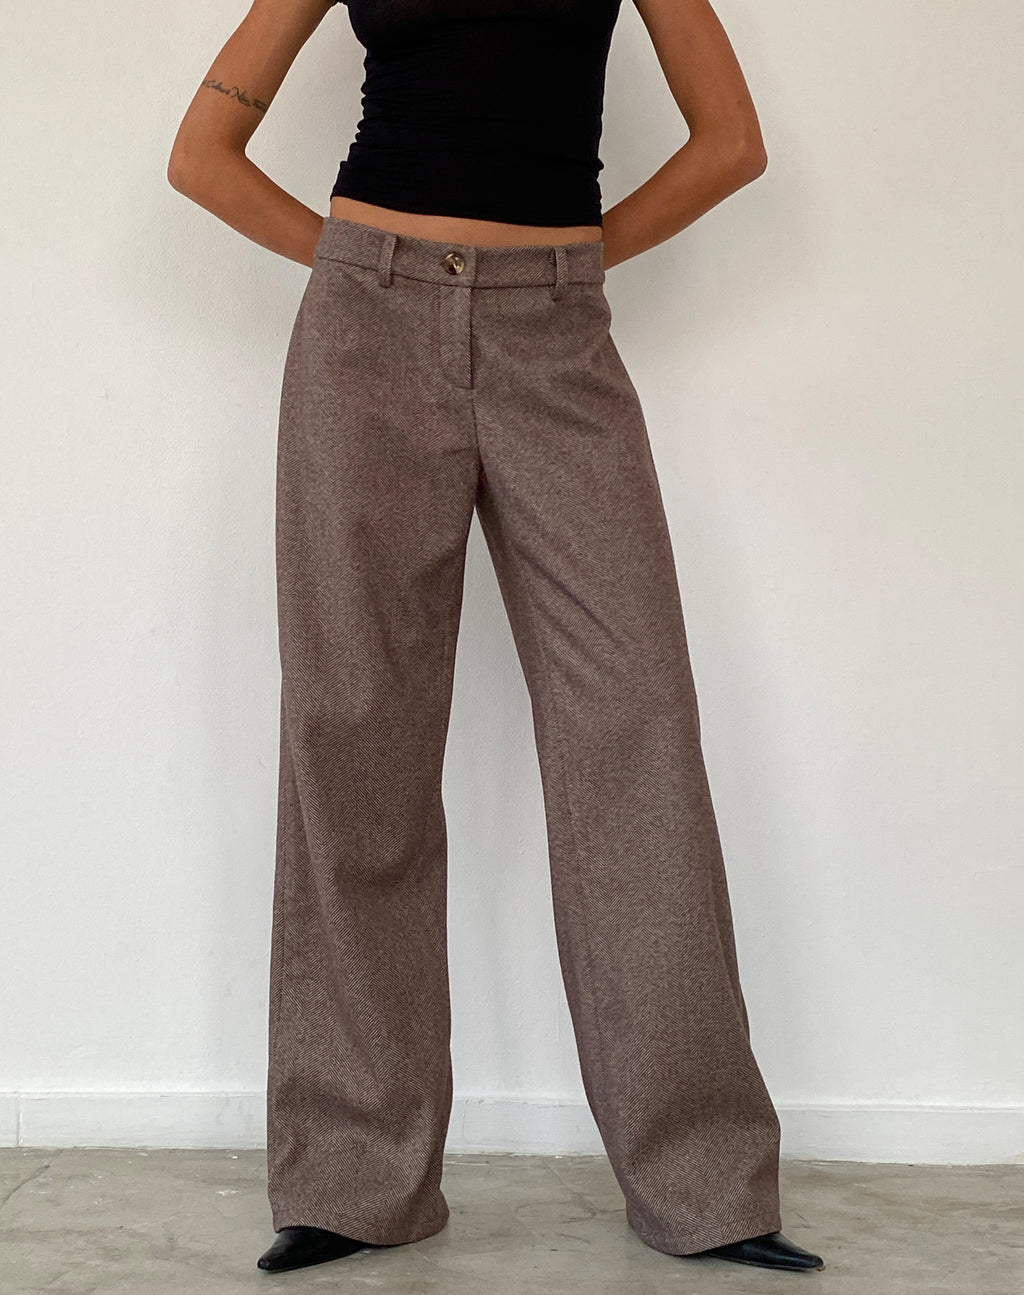 Helsa Low Rise Trouser in Dark Brown Tailoring